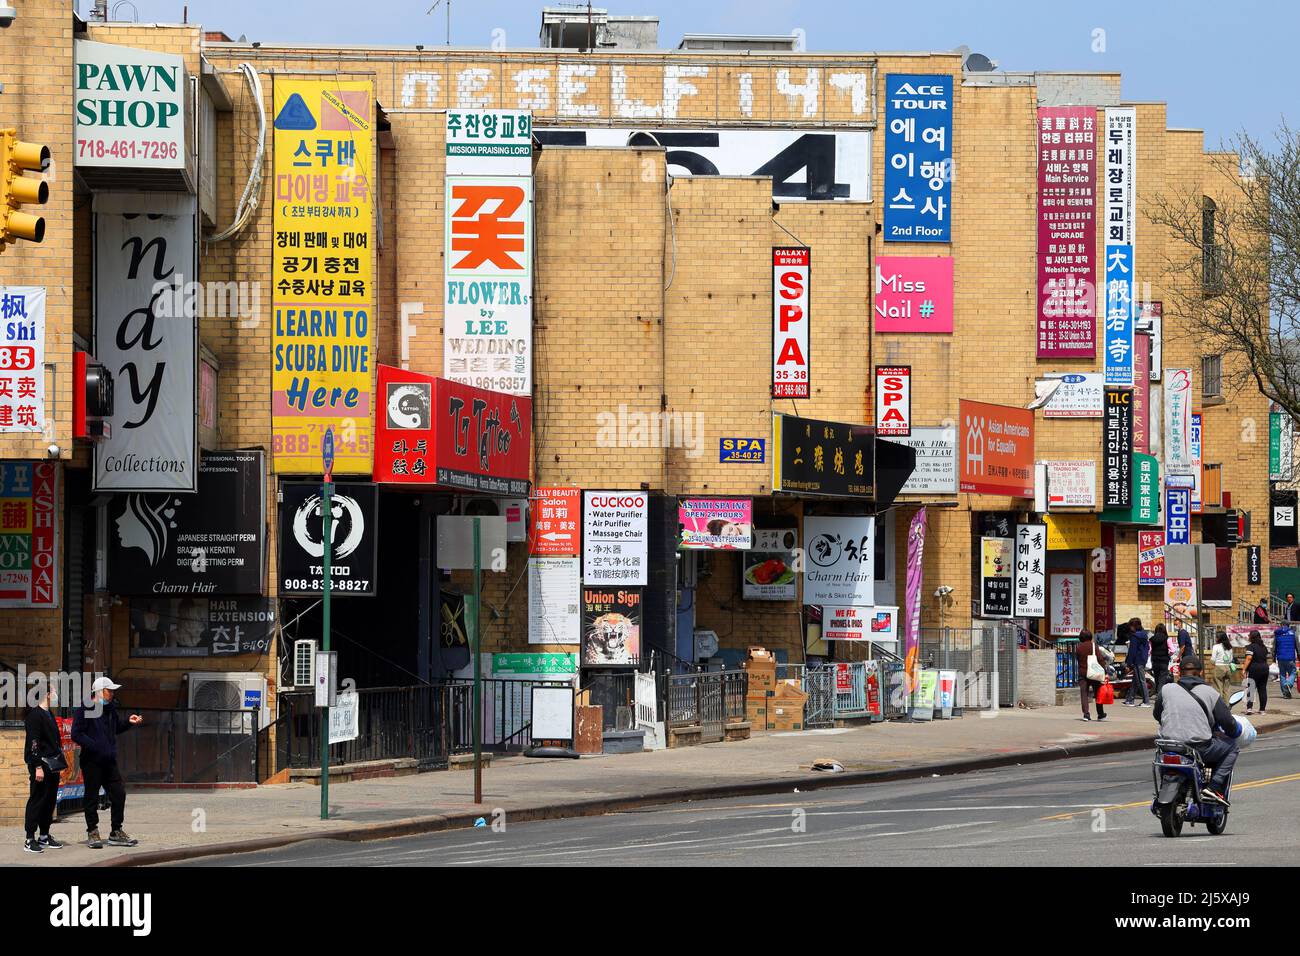 Des panneaux de langue coréenne et chinoise ornent les entreprises sur Union St, près de Northern Blvd dans le centre-ville de Flushing, comté de Queens, New York, NY. Banque D'Images